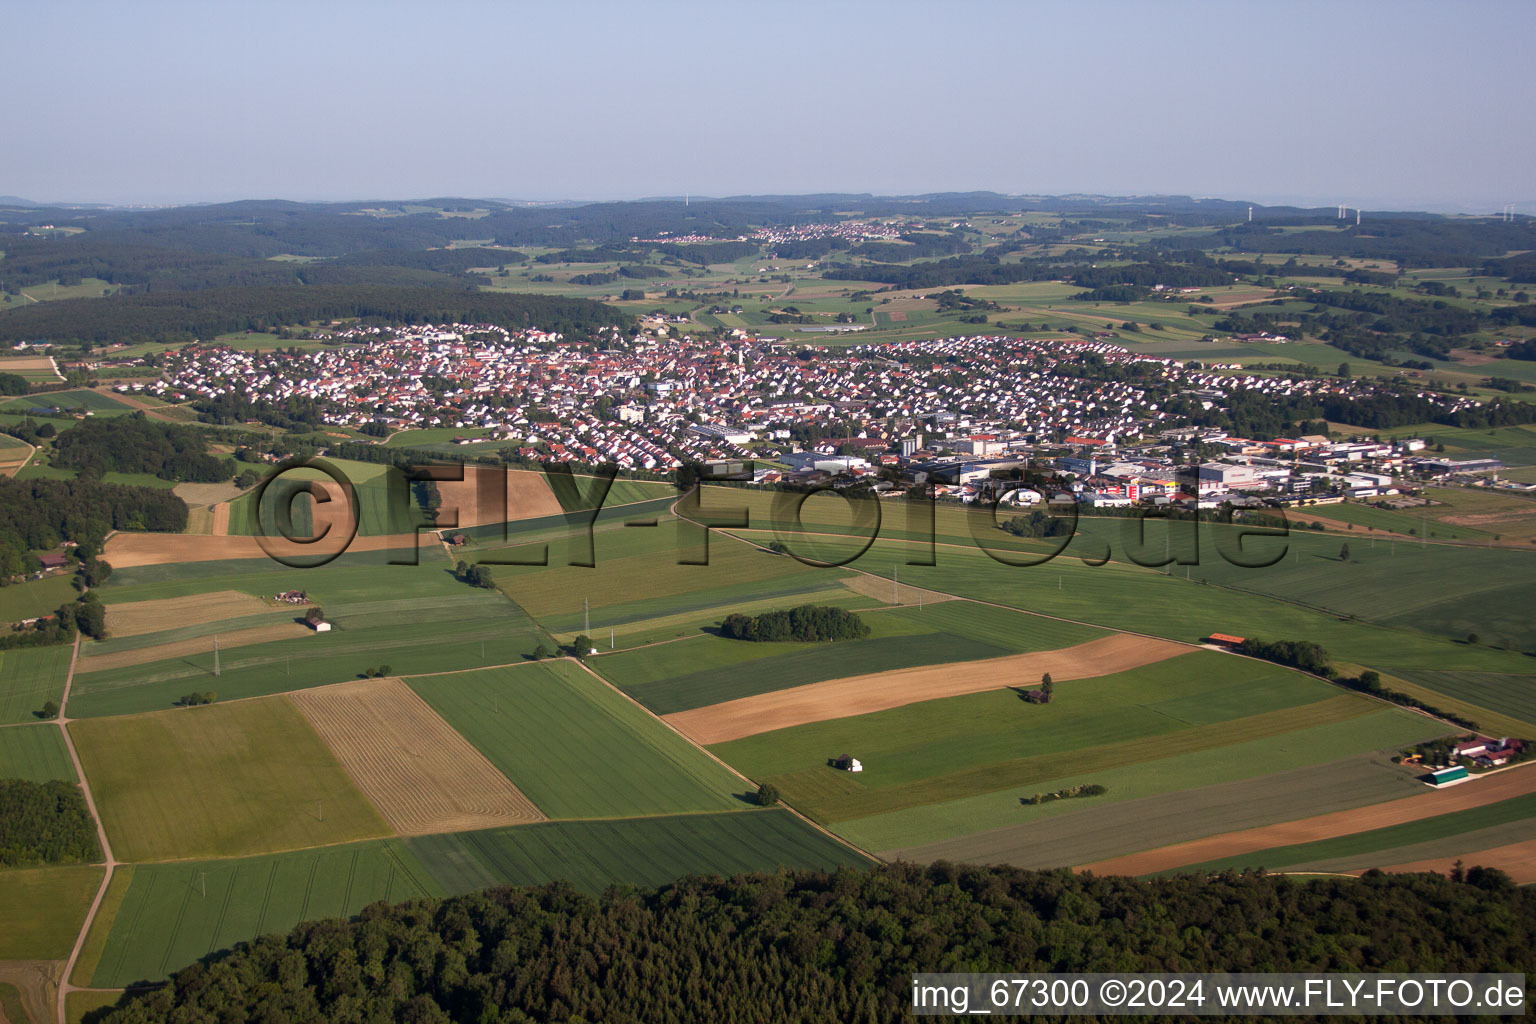 Vue aérienne de Champs agricoles et surfaces utilisables à Laichingen dans le département Bade-Wurtemberg, Allemagne